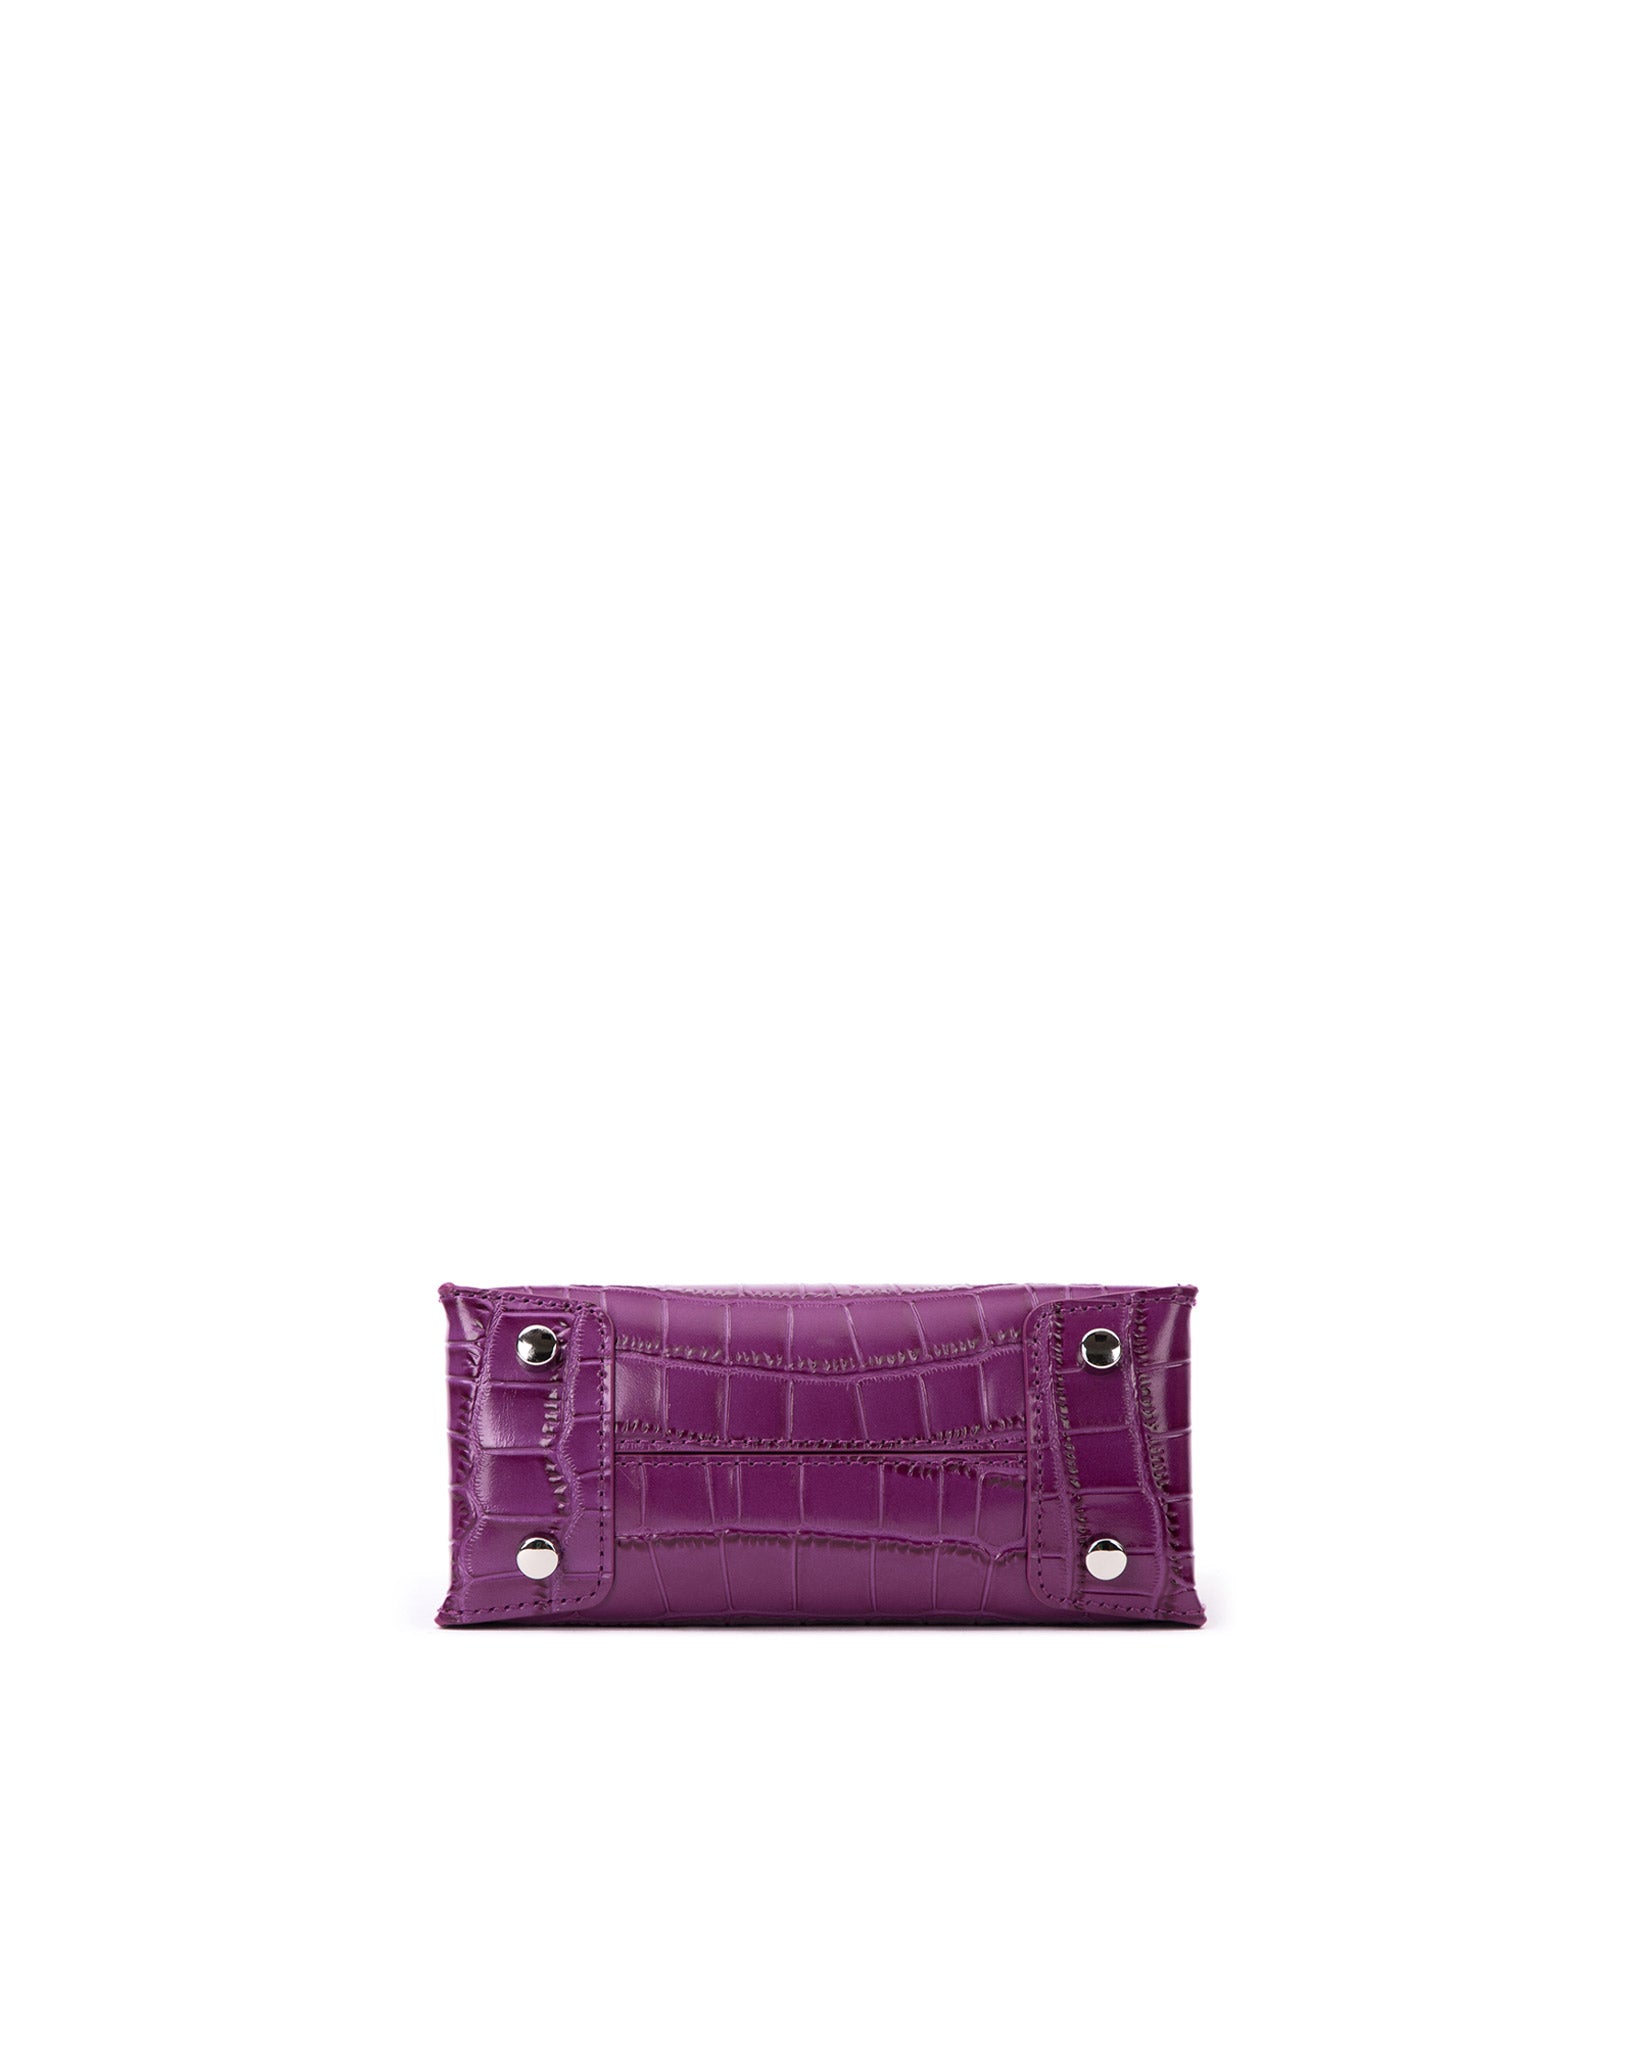 Brandon Blackwood New York - Kuei Bag - Purple Croc Embossed Leather